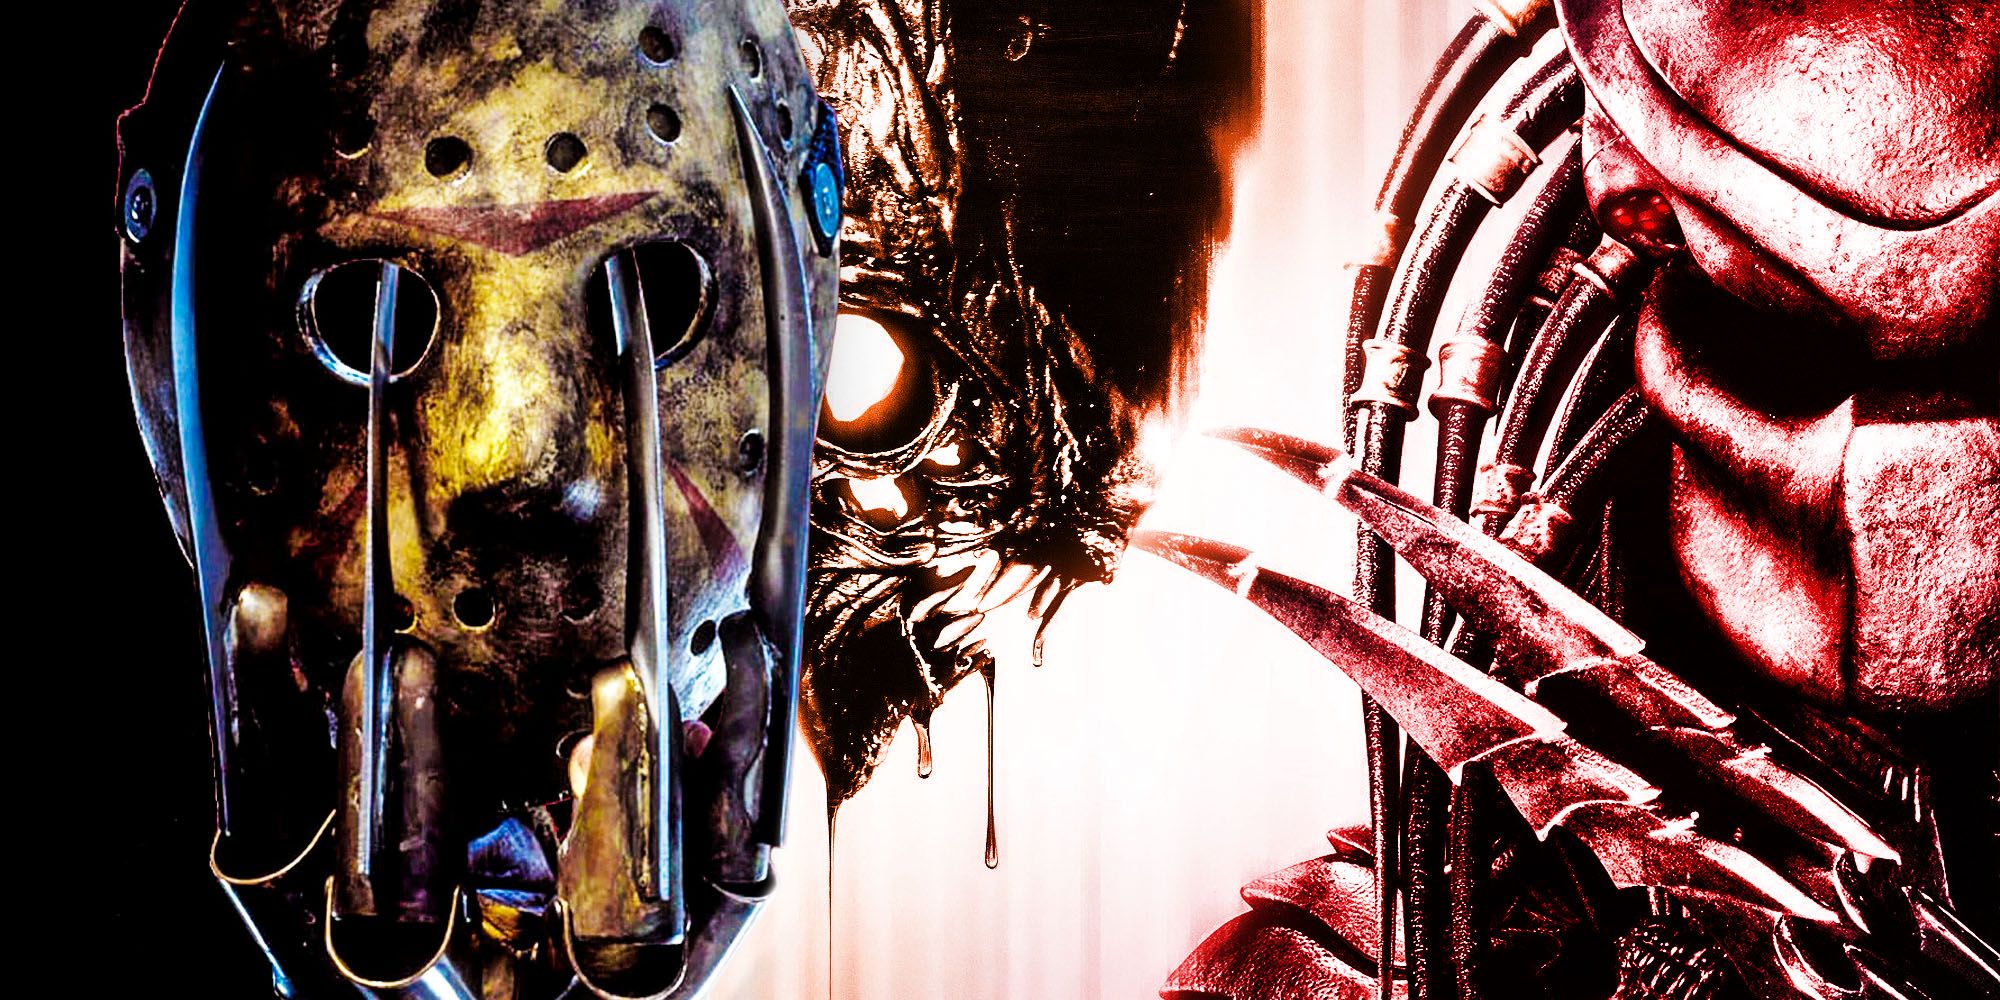 Freddy vs jason Alien vs predator